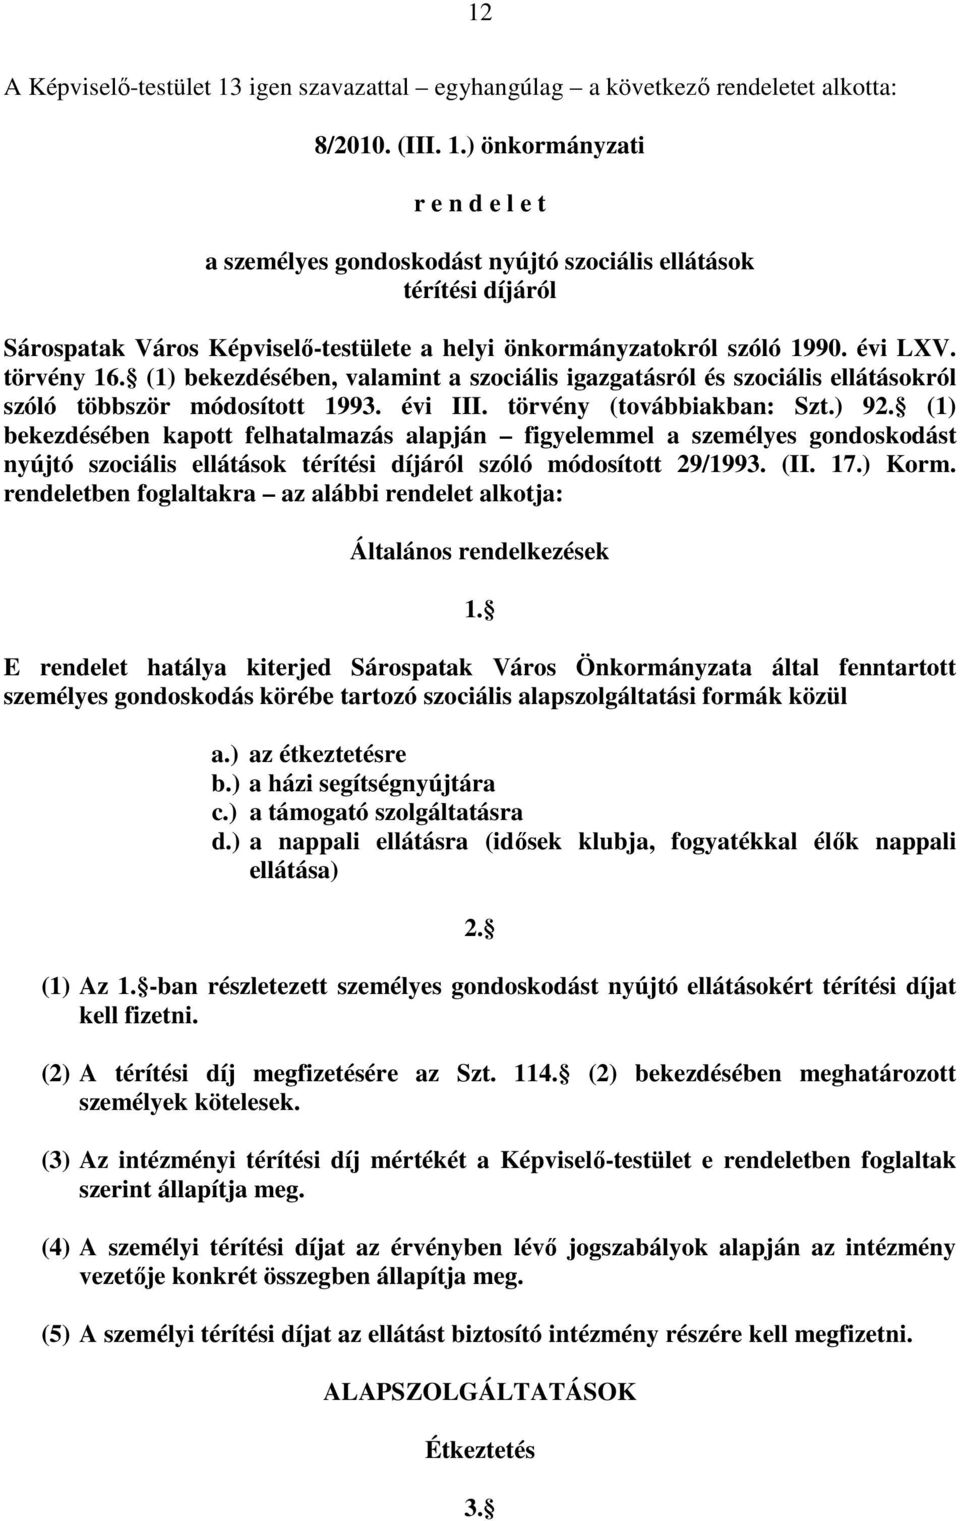 ) önkormányzati r e n d e l e t a személyes gondoskodást nyújtó szociális ellátások térítési díjáról Sárospatak Város Képviselı-testülete a helyi önkormányzatokról szóló 1990. évi LXV. törvény 16.